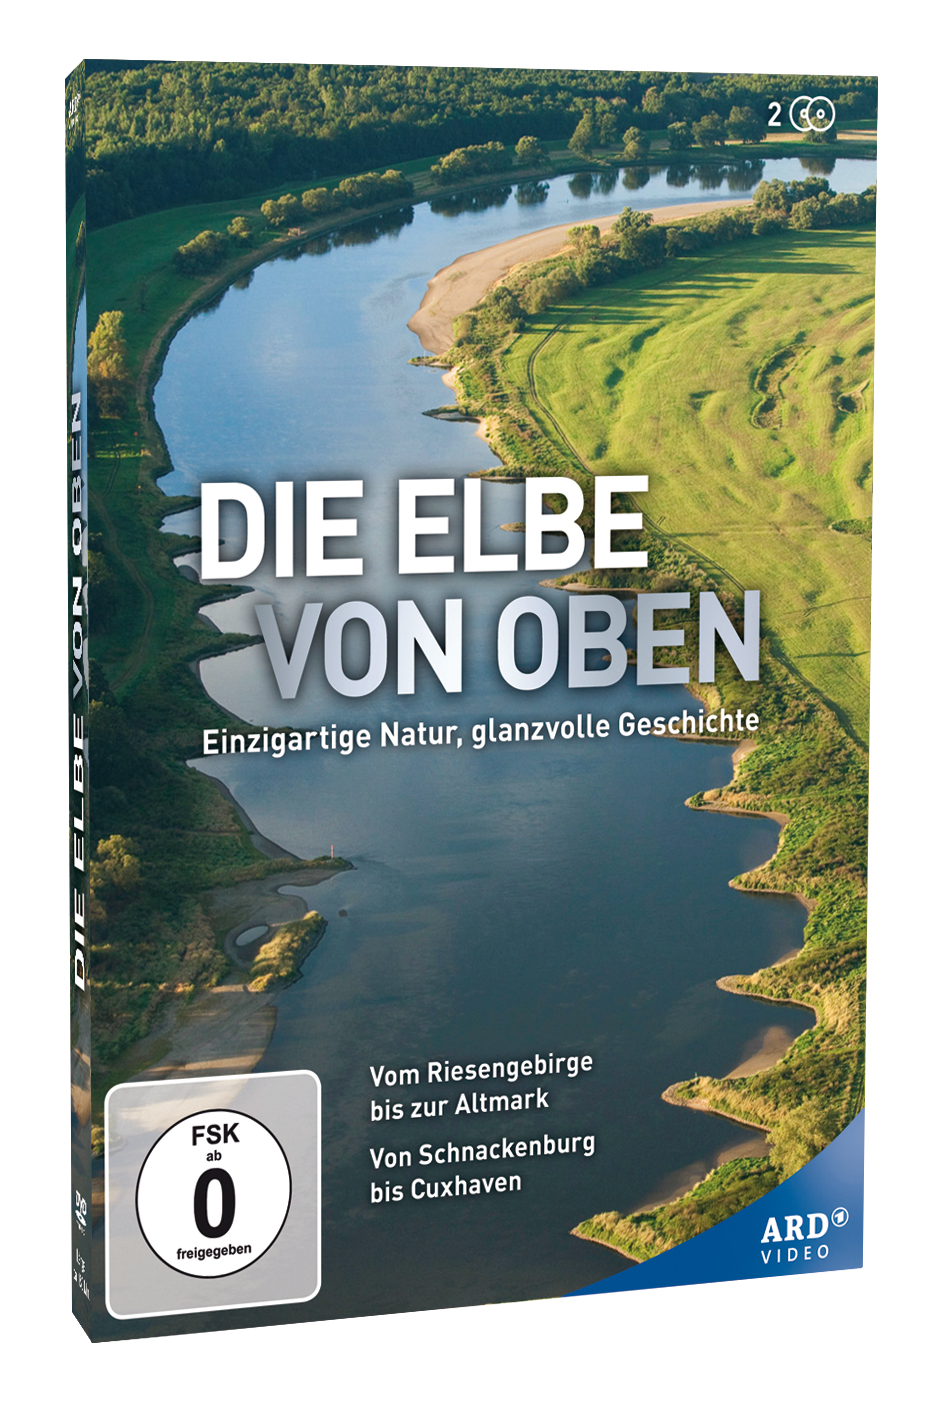 Die Elbe von oben - ARD Video